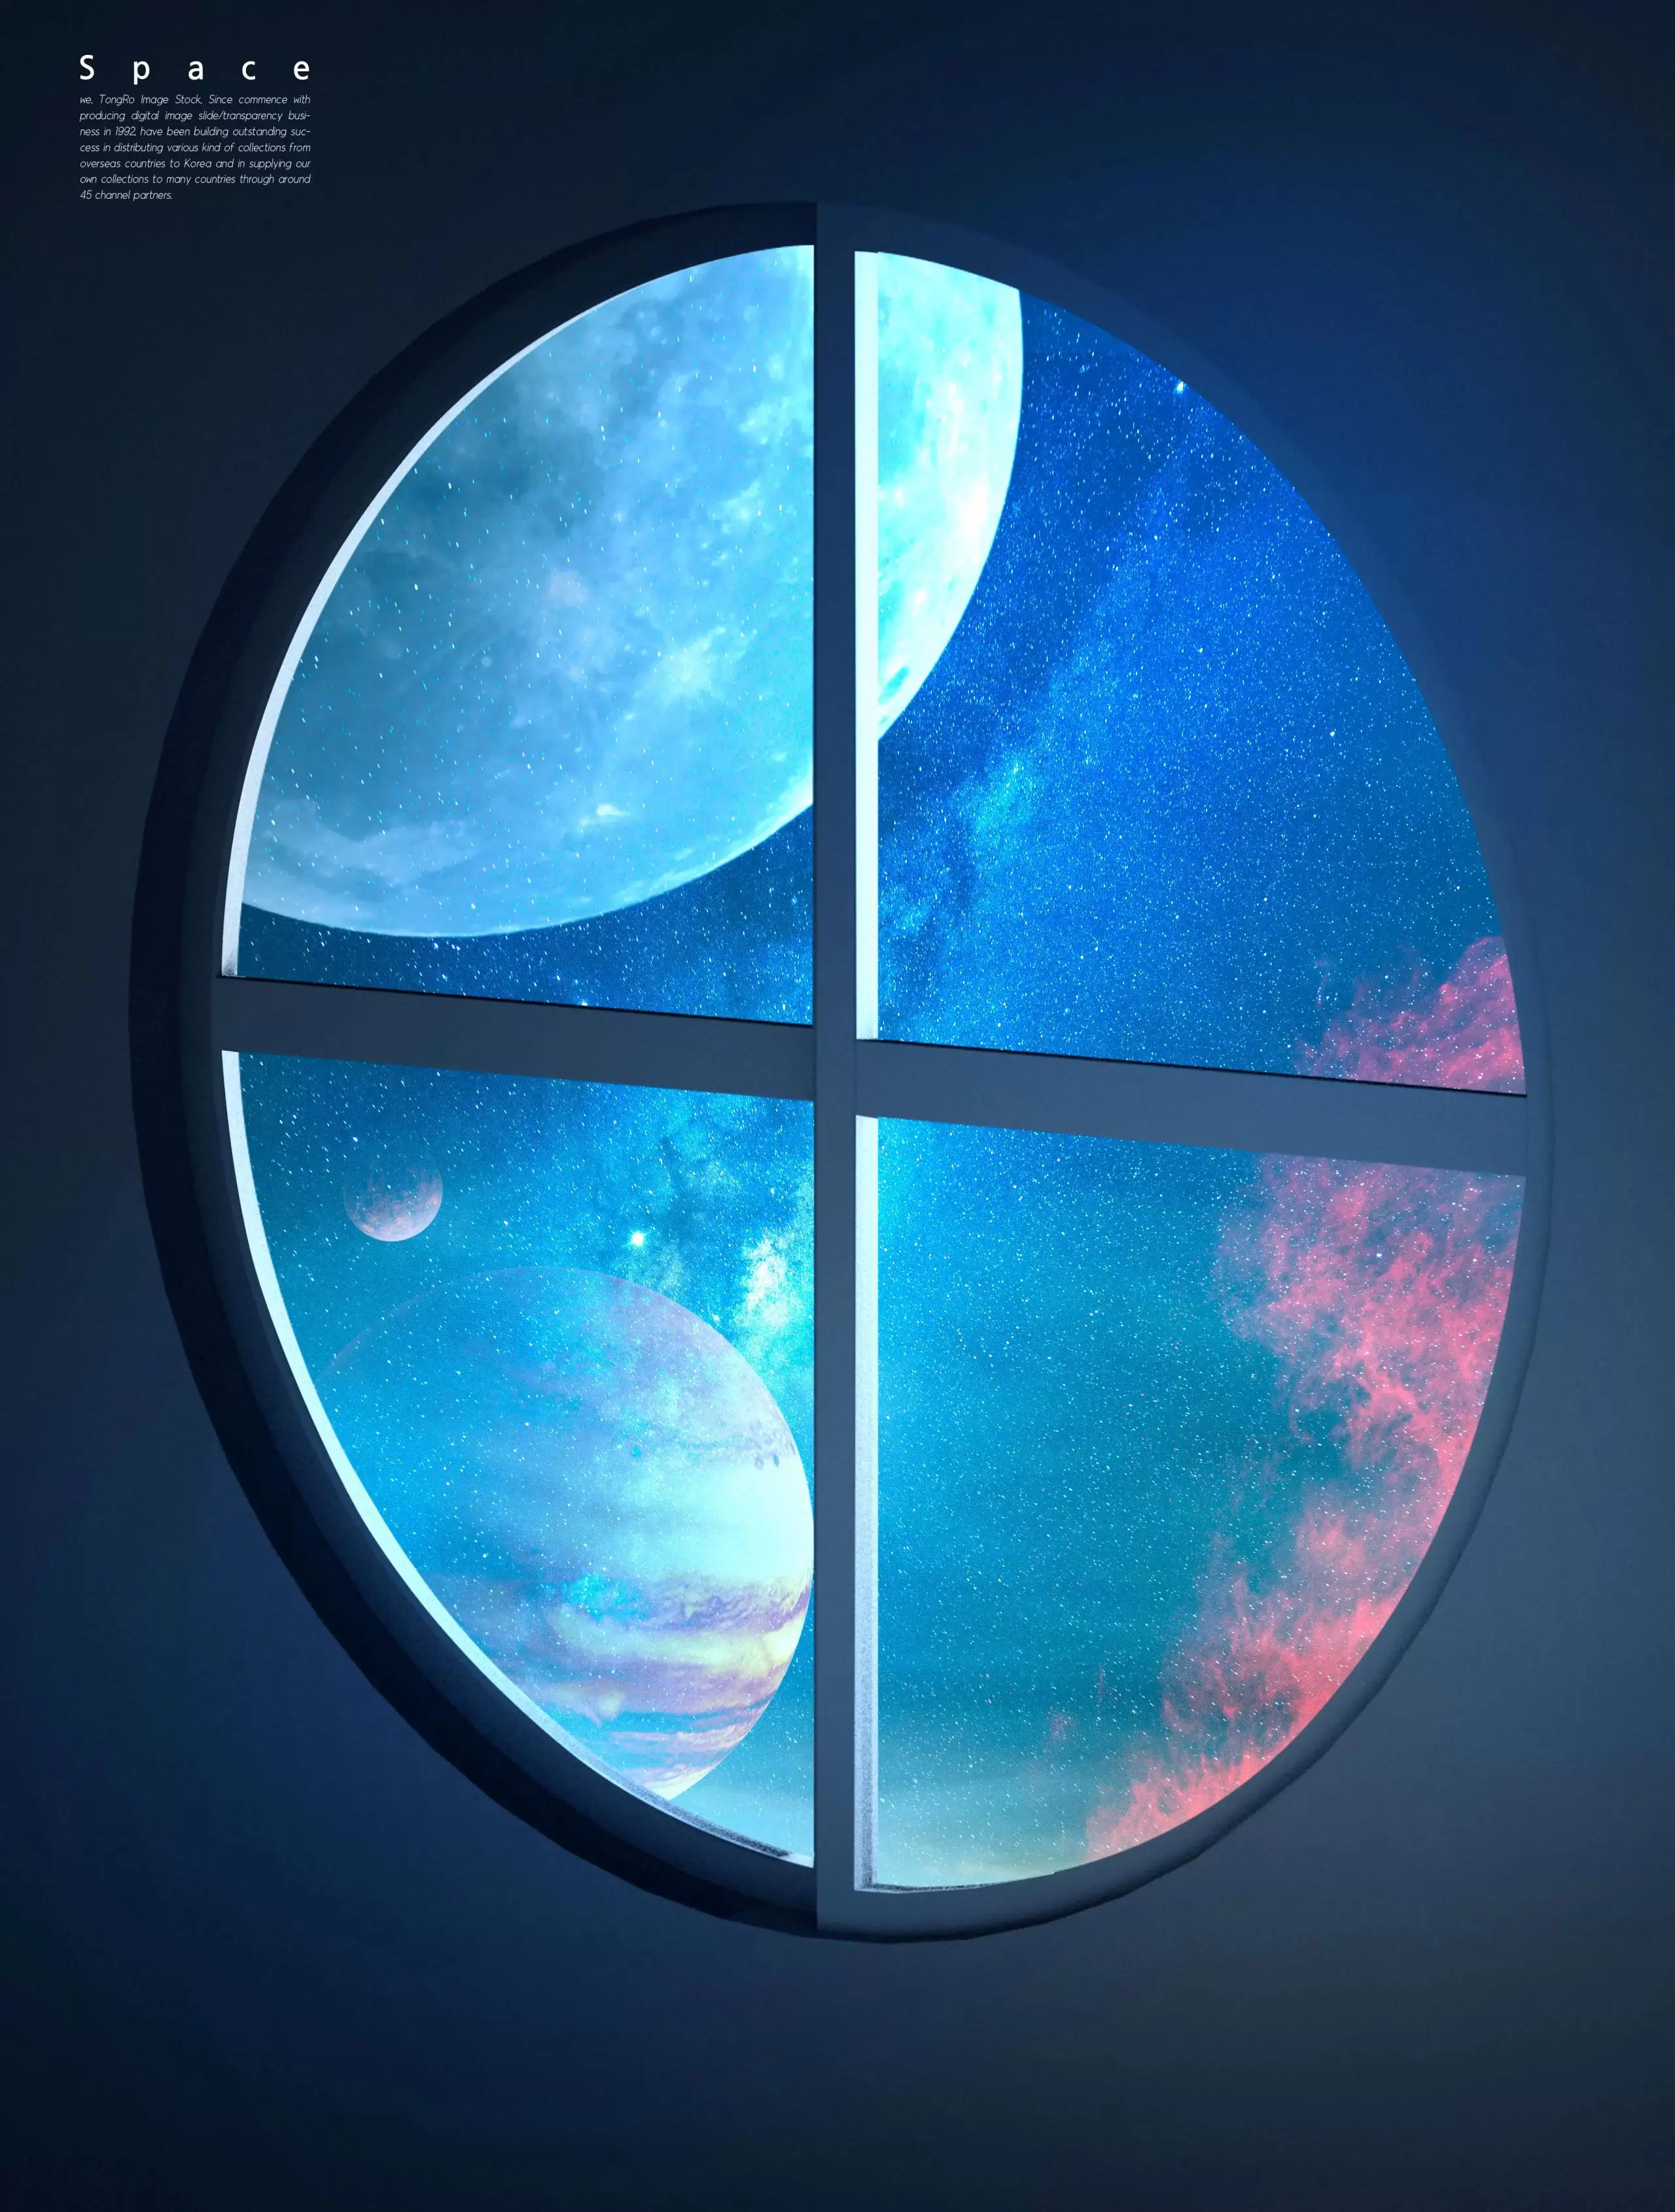 圆形窗户宇宙空间背景图素材 (psd)插图